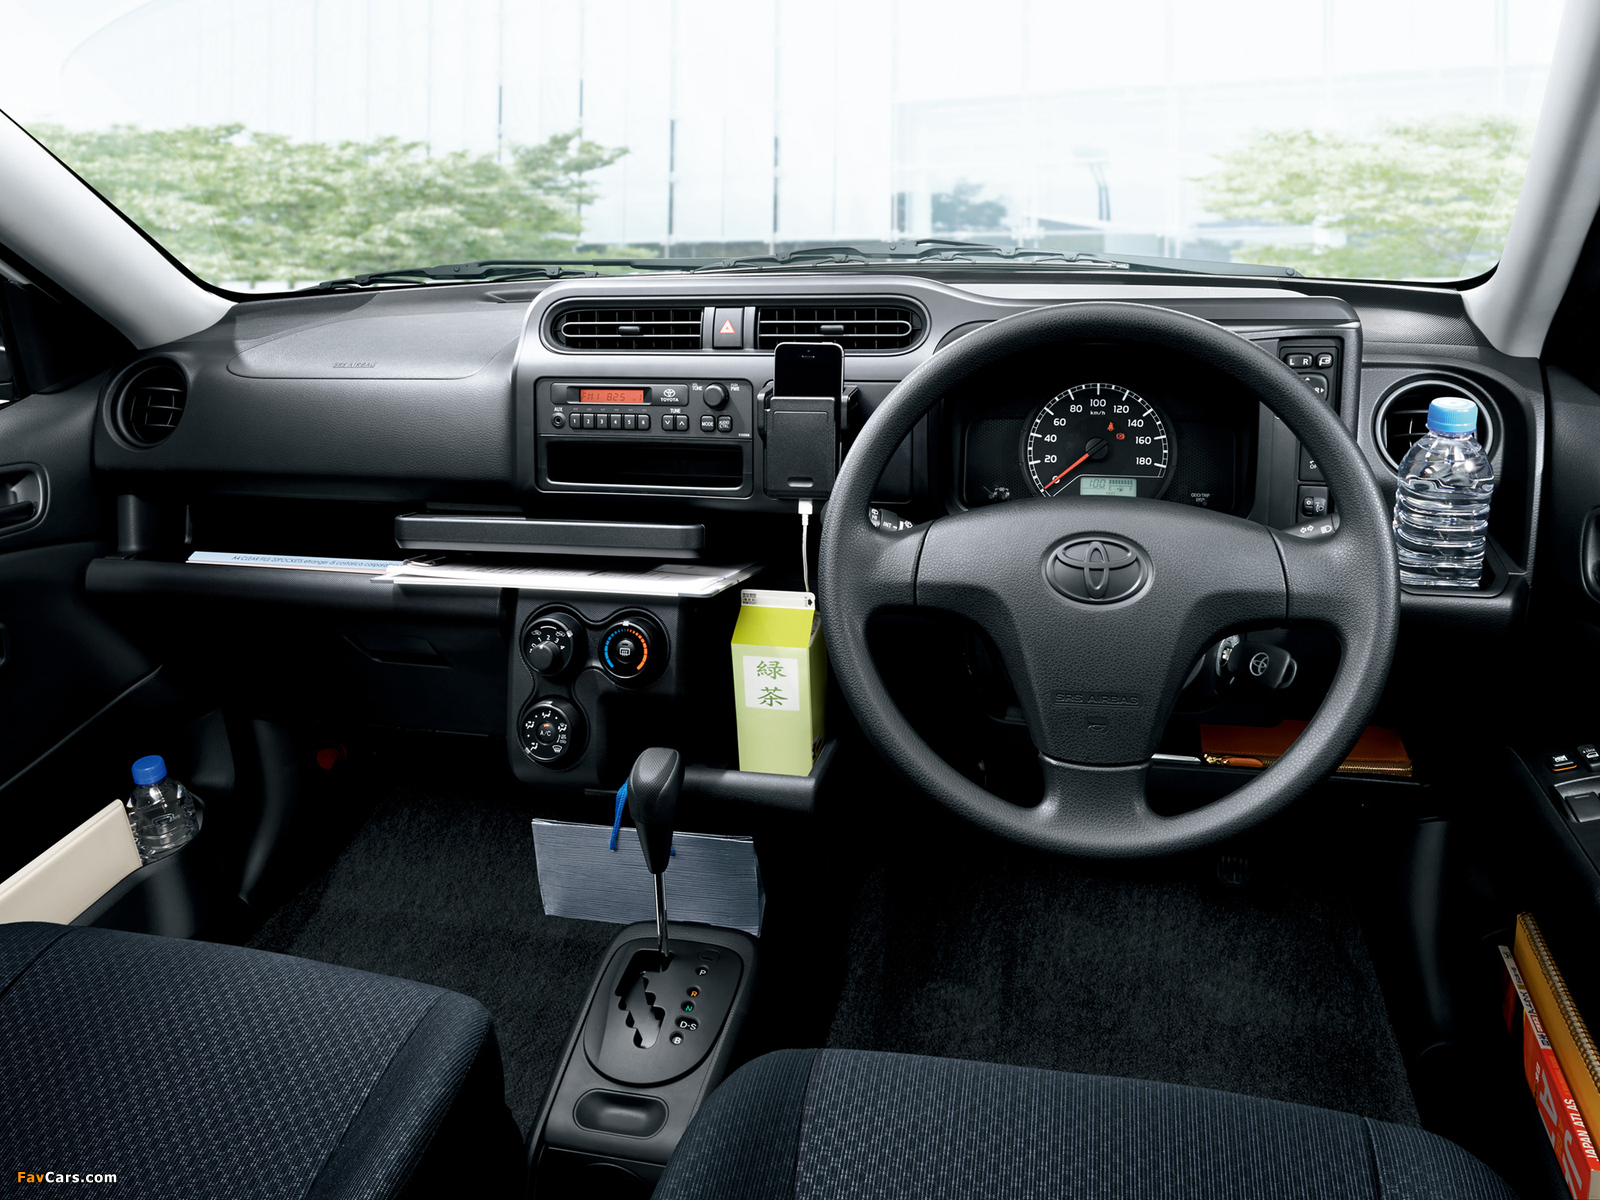 Toyota Probox Van (CP50) 2014 pictures (1600 x 1200)